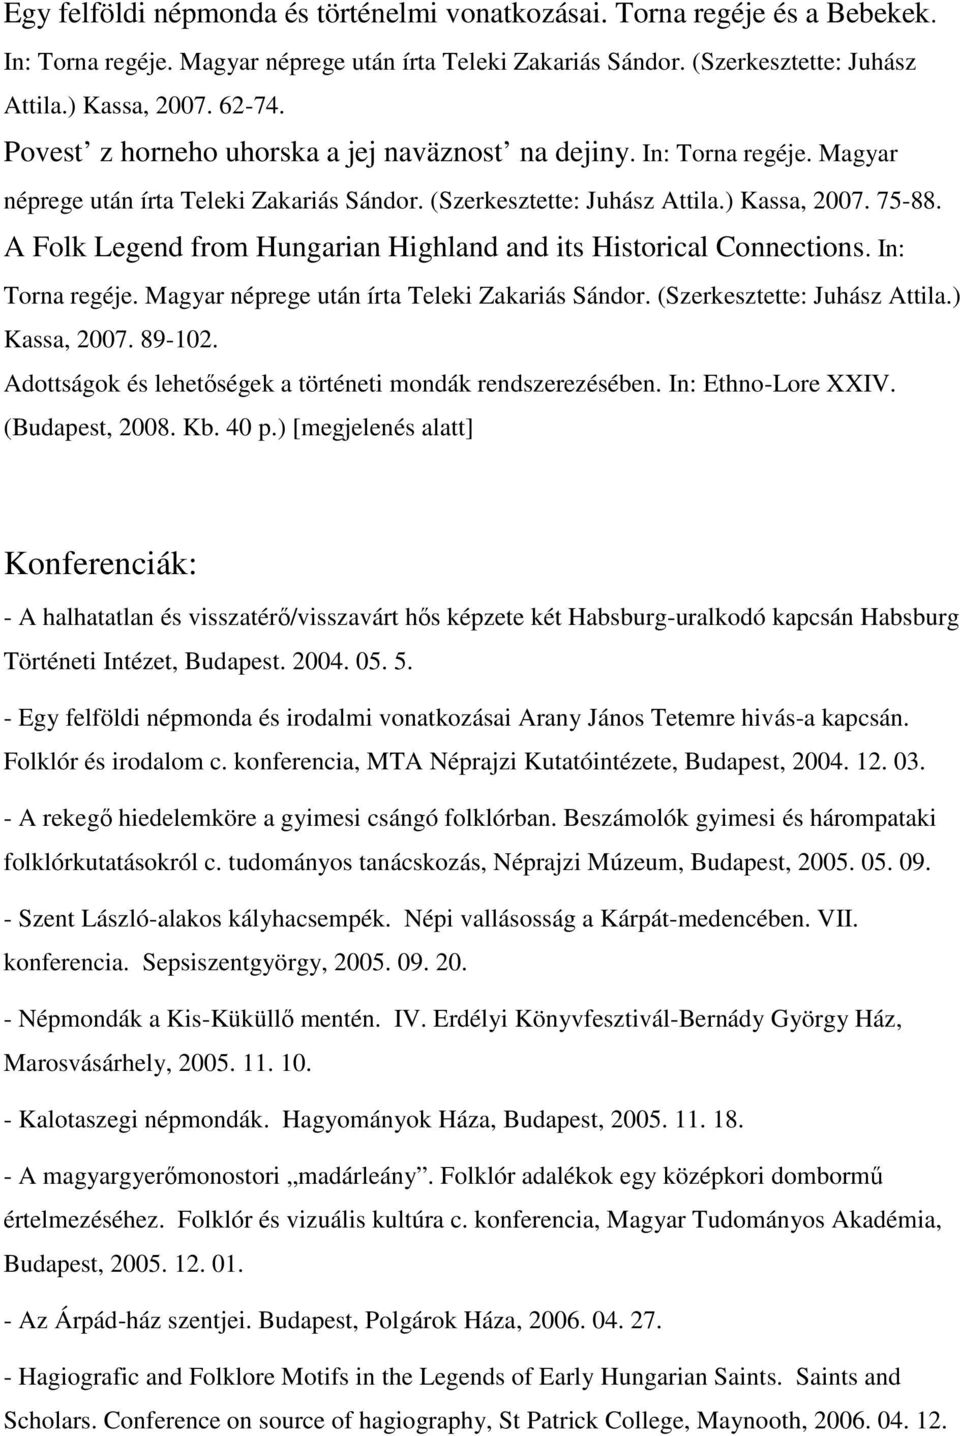 A Folk Legend from Hungarian Highland and its Historical Connections. In: Torna regéje. Magyar néprege után írta Teleki Zakariás Sándor. (Szerkesztette: Juhász Attila.) Kassa, 2007. 89-102.